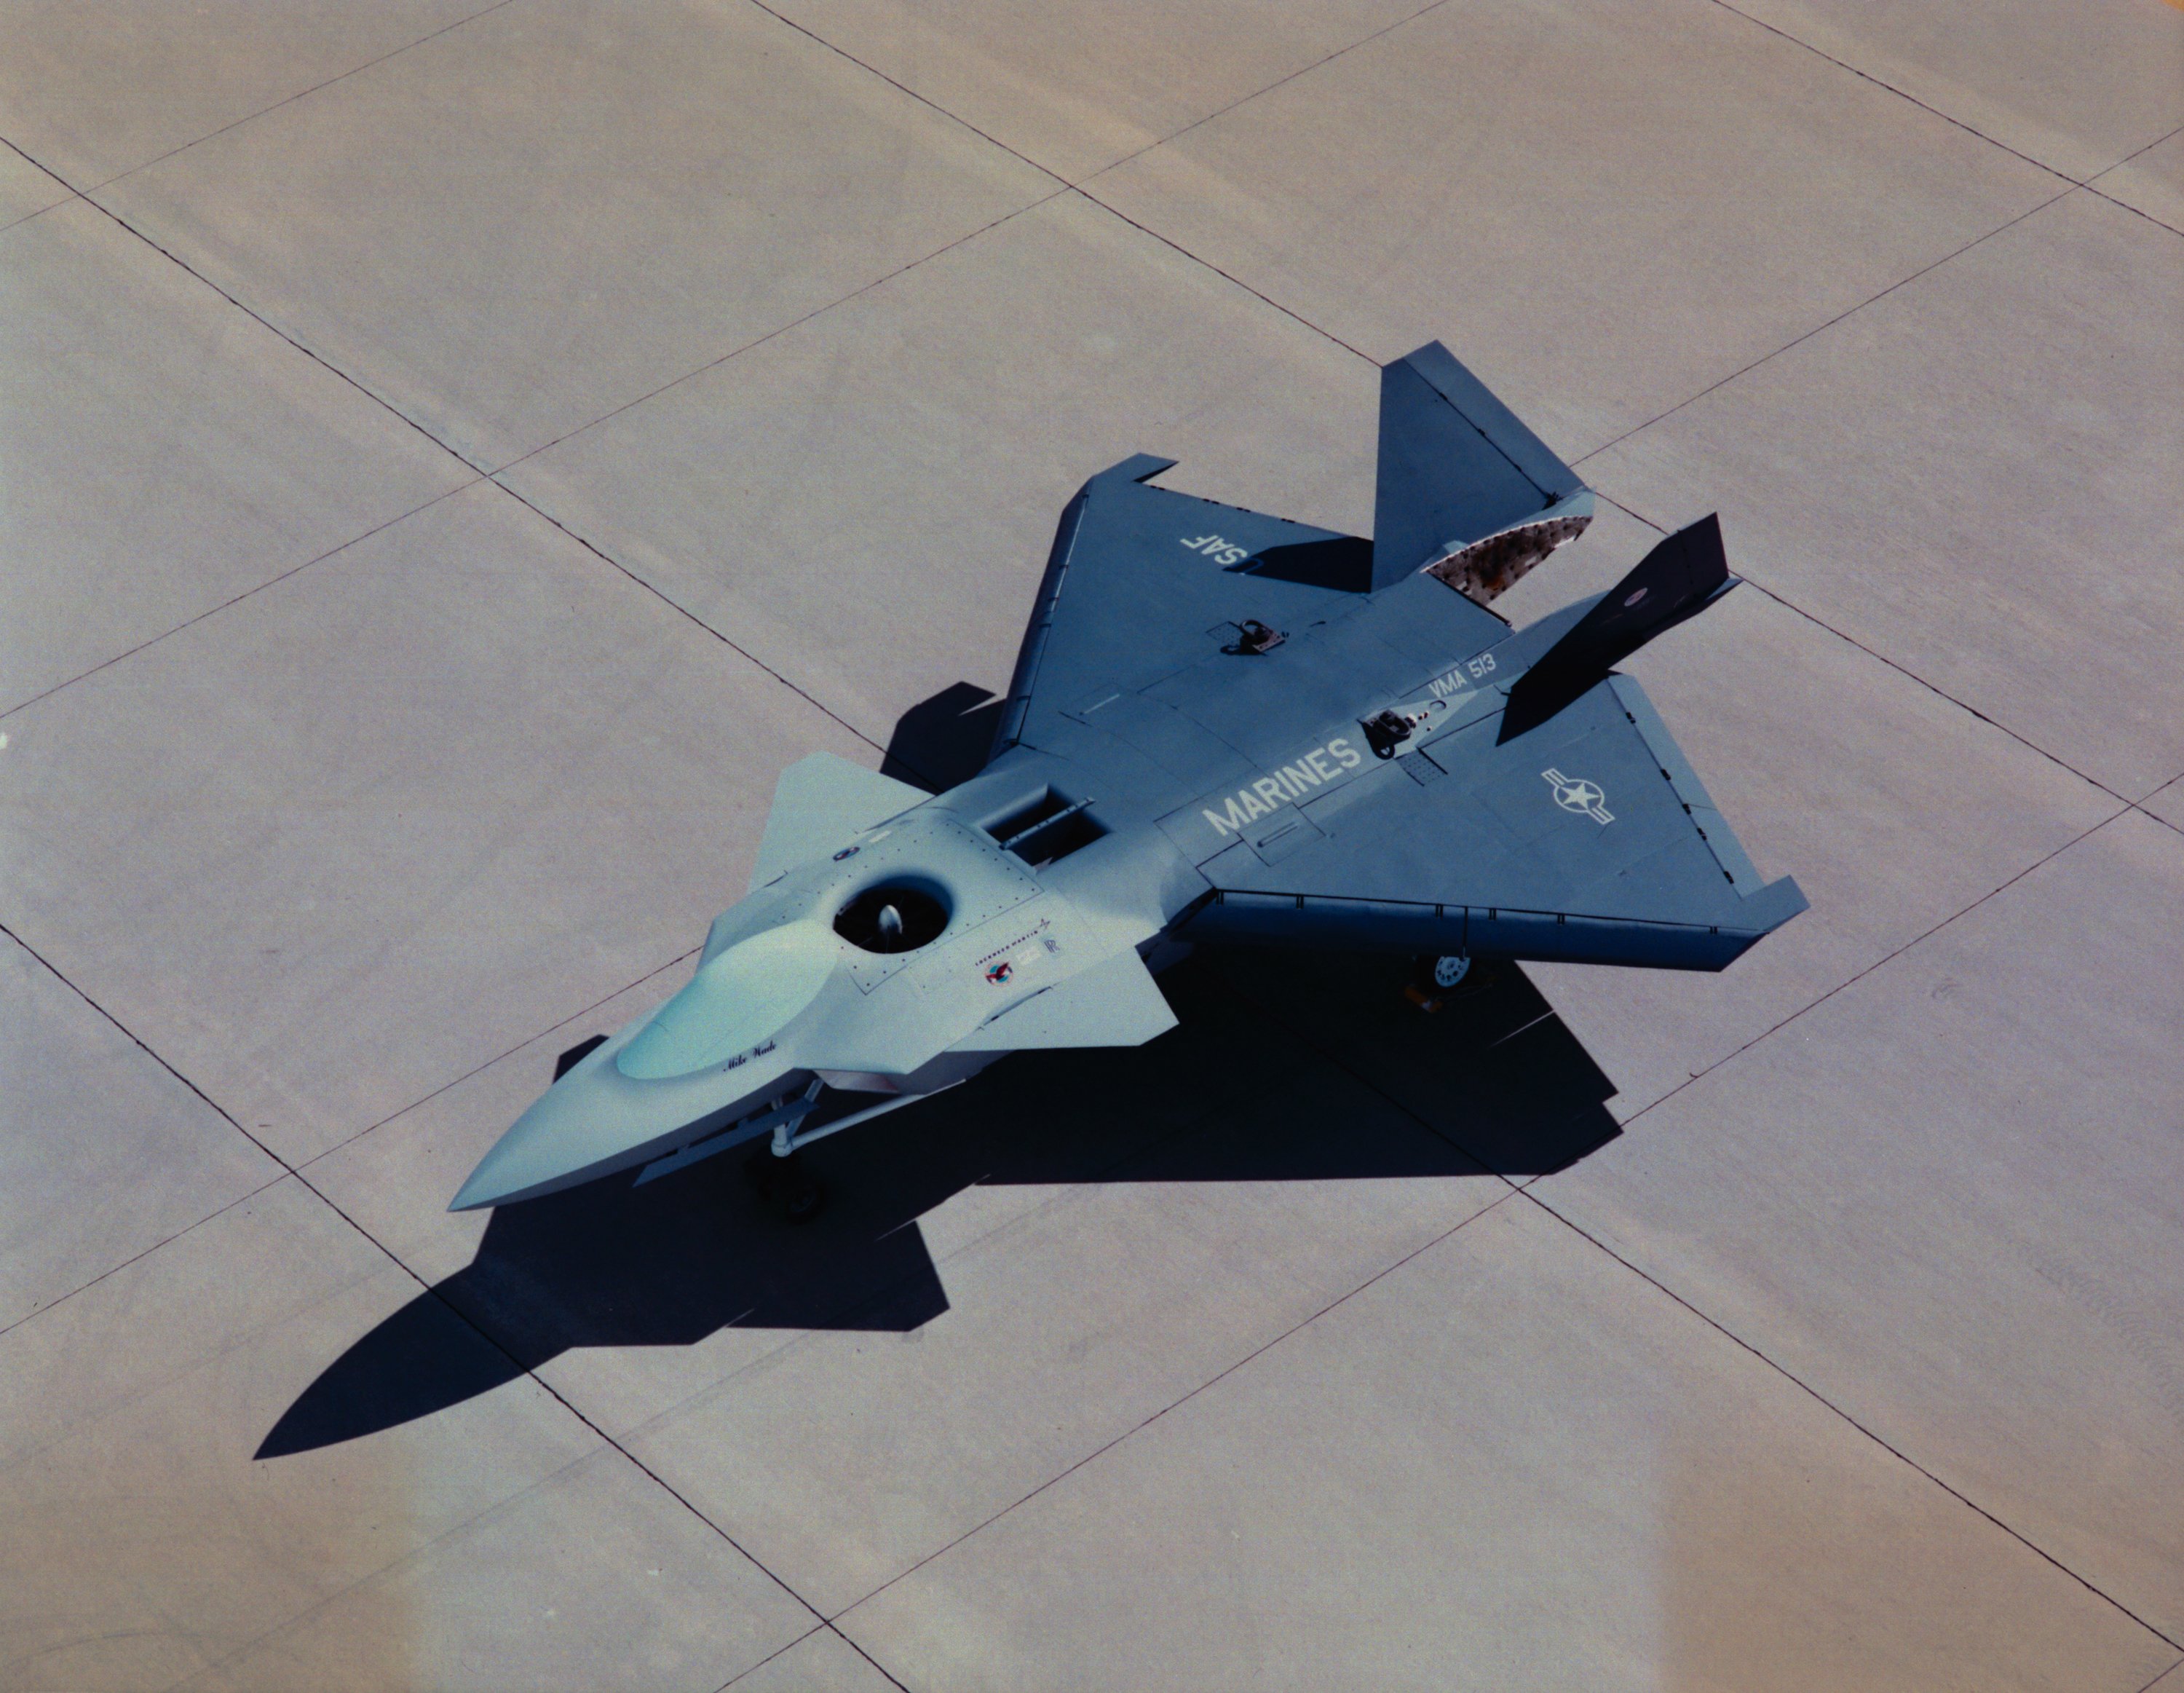 X-32A [Lockheed Martin]